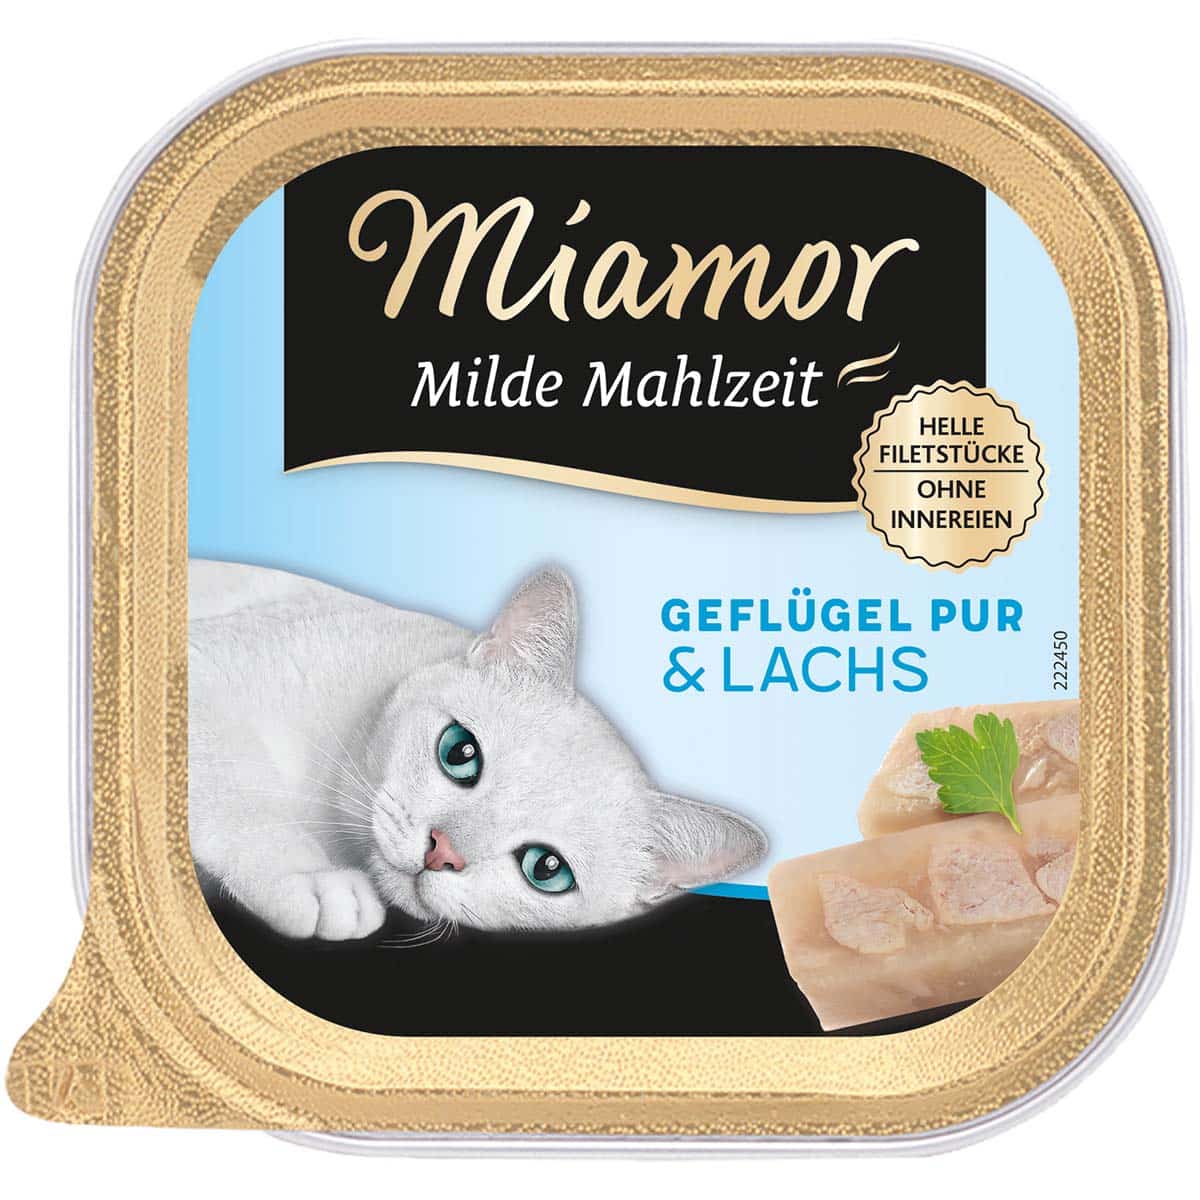 Miamor Milde Mahlzeit Geflügel Pur & Lachs 32x100g